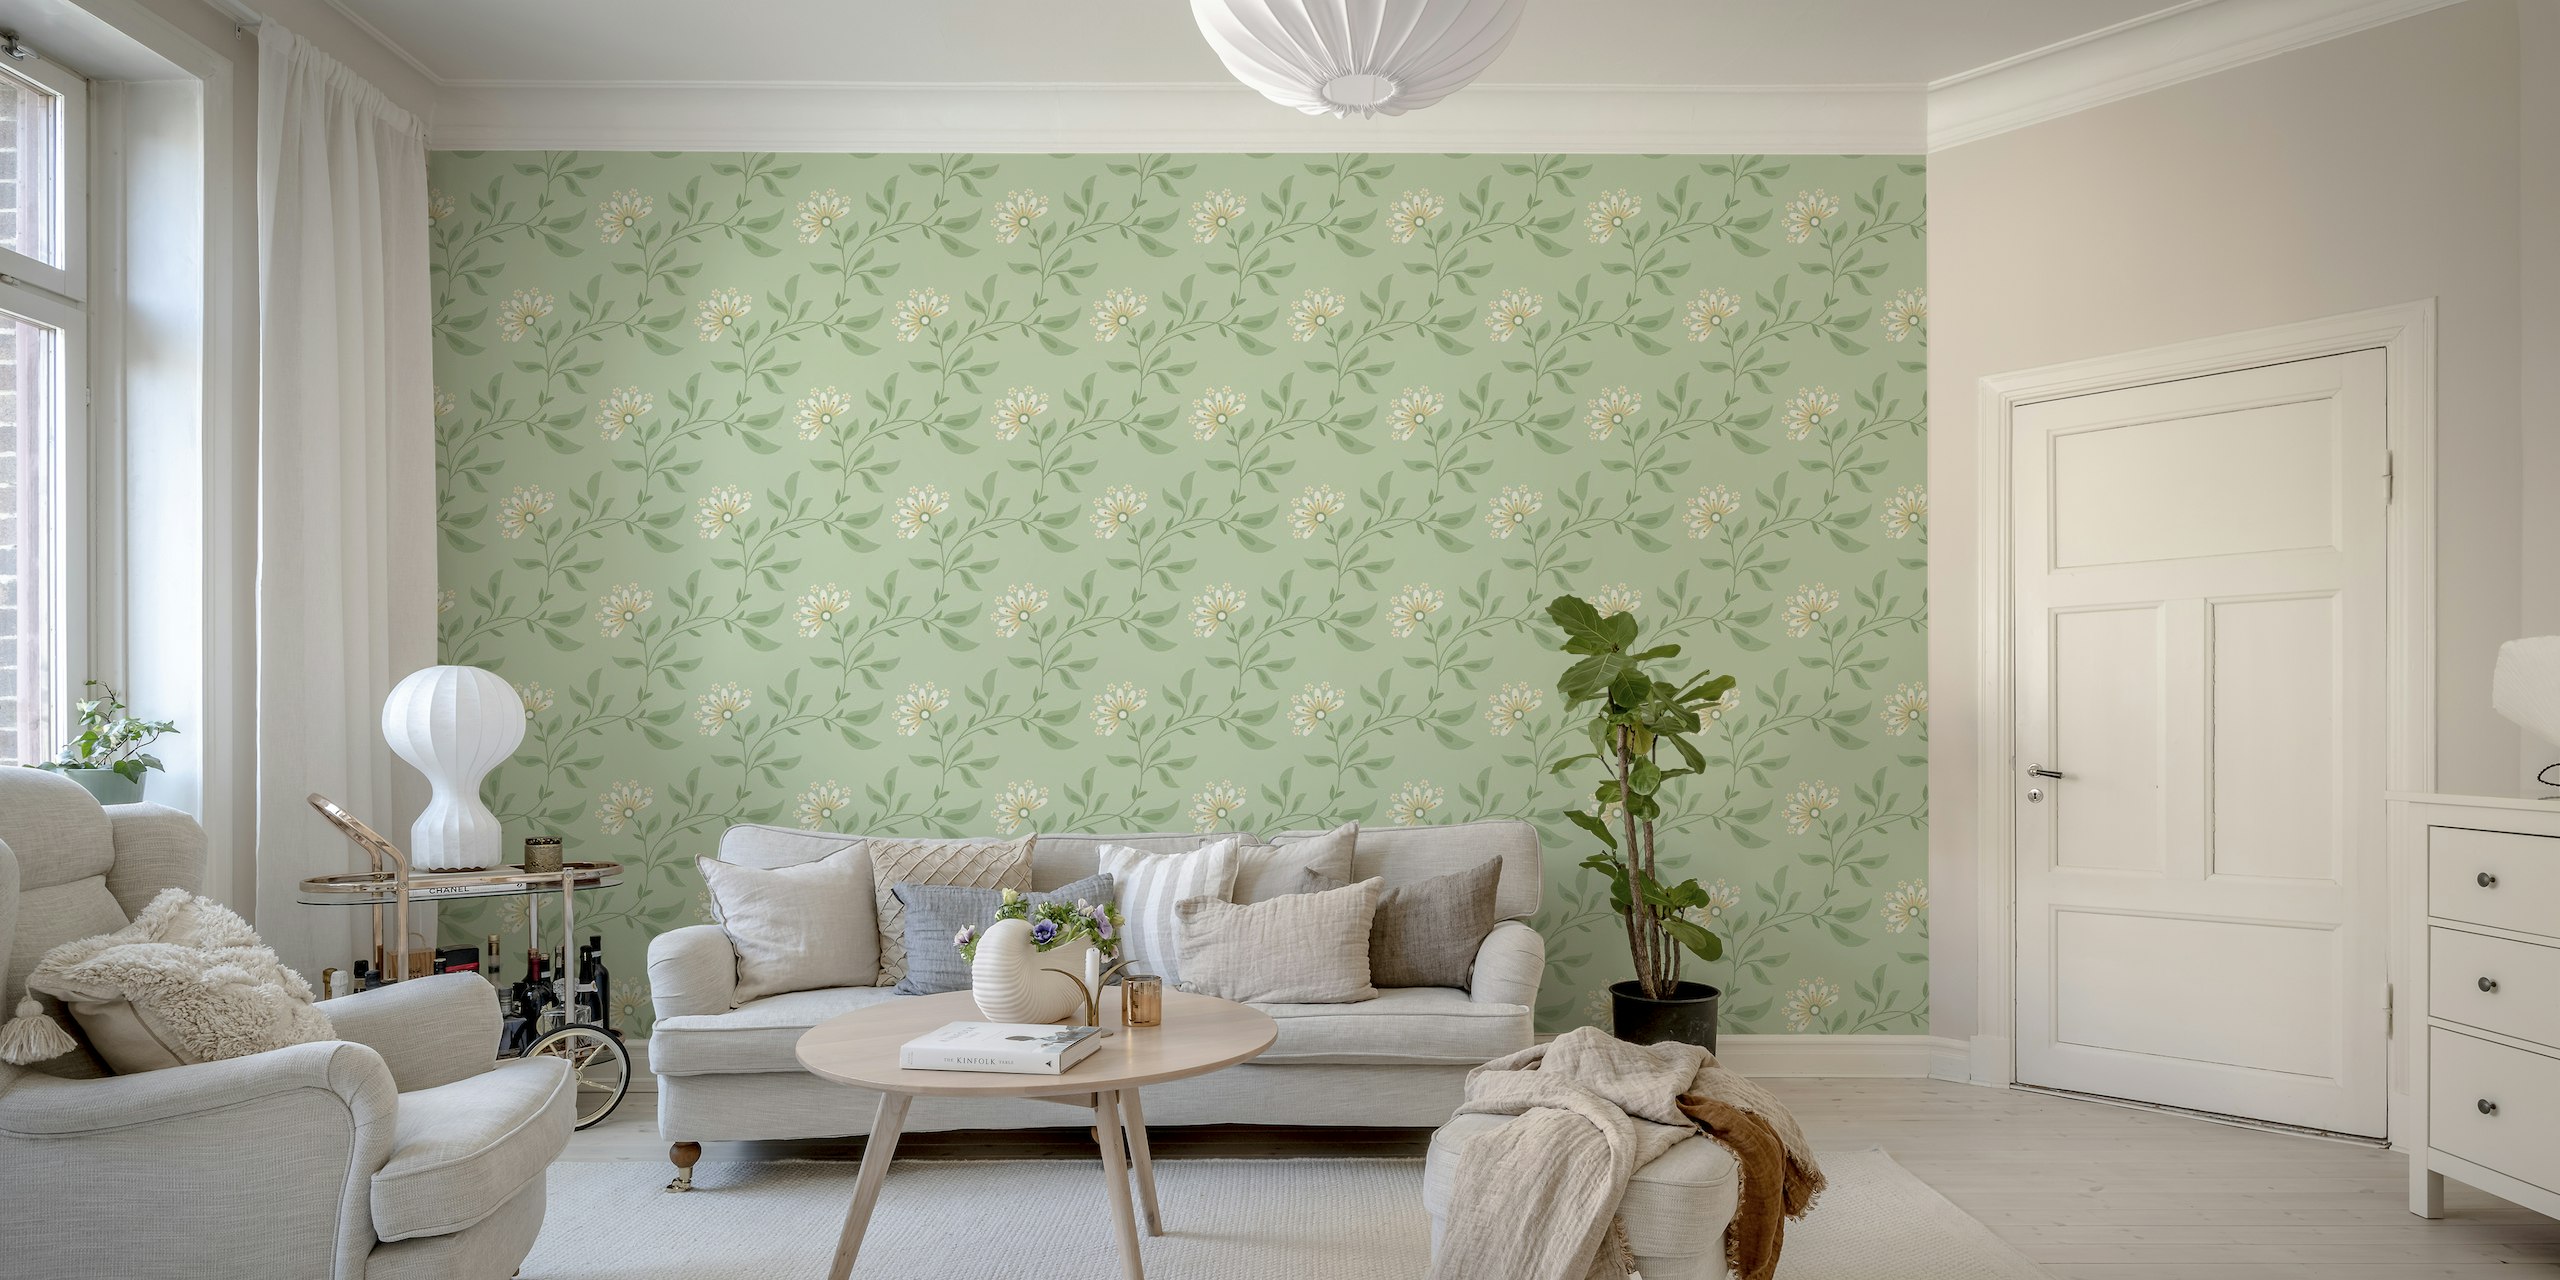 Trailing Floral, sagegreen, L wallpaper